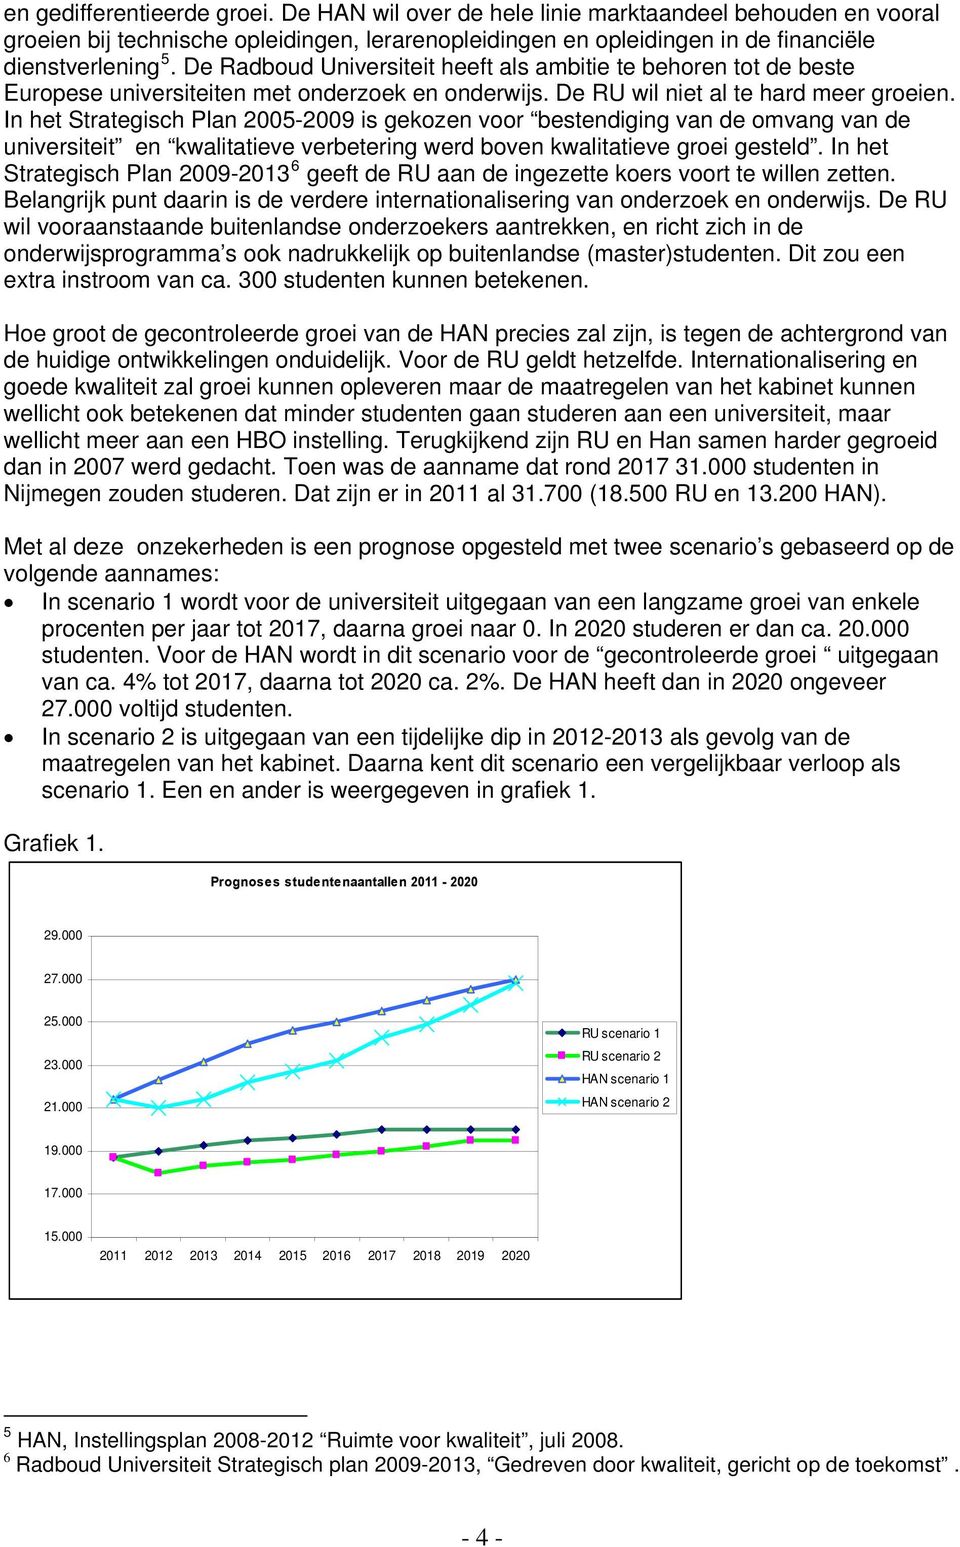 In het Strategisch Plan 2005-2009 is gekozen voor bestendiging van de omvang van de universiteit en kwalitatieve verbetering werd boven kwalitatieve groei gesteld.